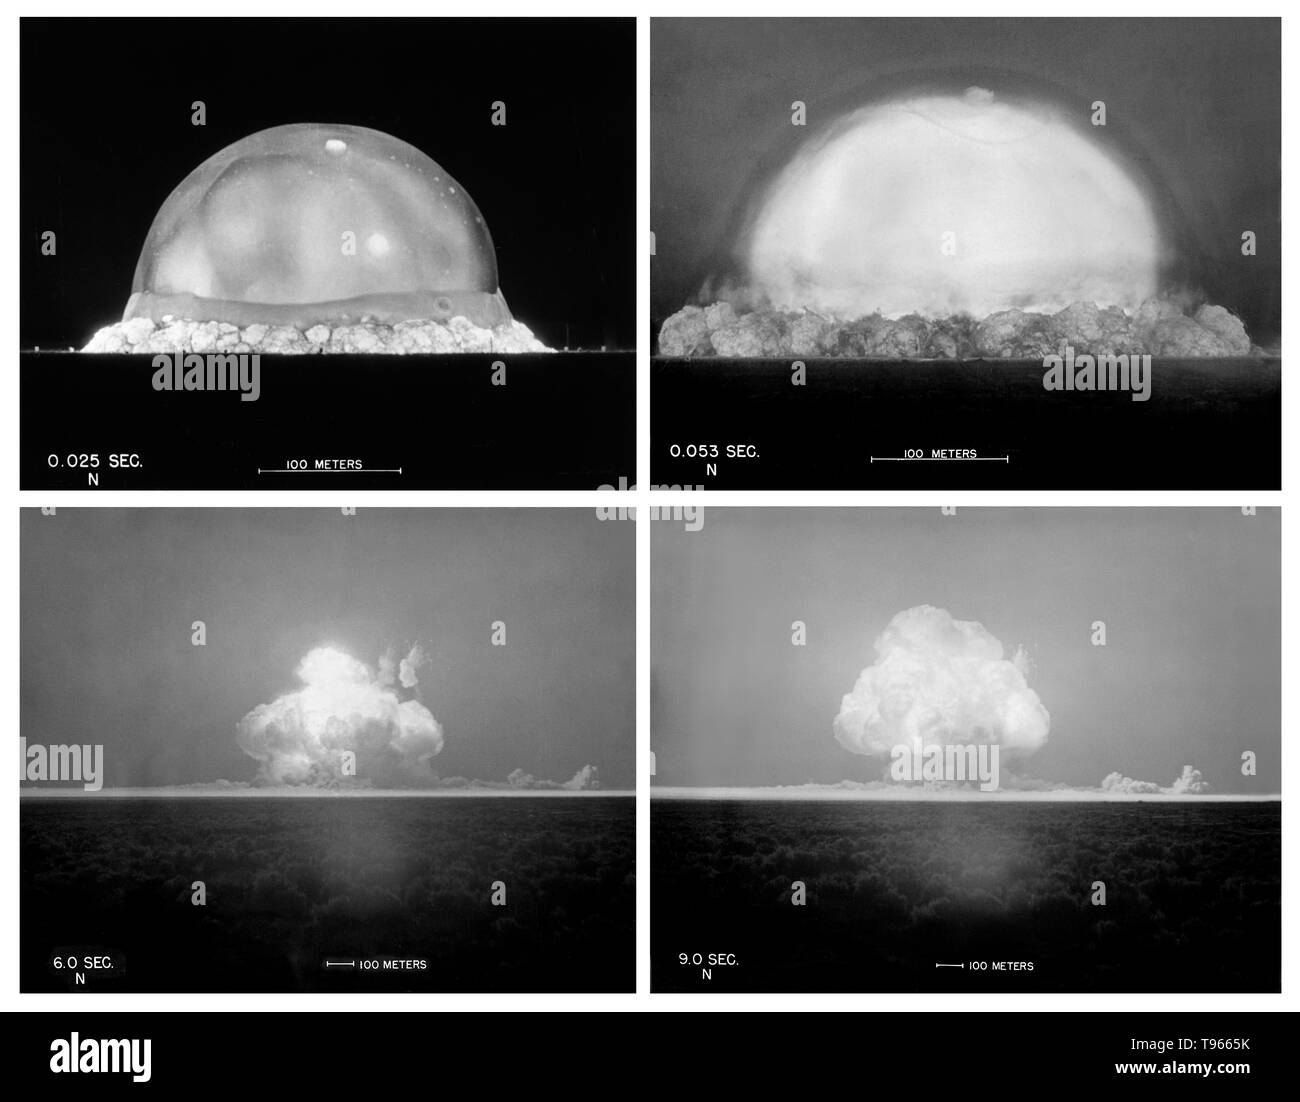 Trinity est le nom de code de la première explosion d'un engin nucléaire. Ce test a été menée par l'armée des États-Unis le 16 juillet 1945, dans la Jornada del Muerto désert à environ 35 milles au sud-est de Socorro, Nouveau Mexique, à la nouvelle de White Sands, qui a incorporé l'Alamogordo bombardements et de tir. La date de l'essai est habituellement considérée comme le début de l'âge atomique. Trinity était un test de l'implosion-design appareil de plutonium. Banque D'Images